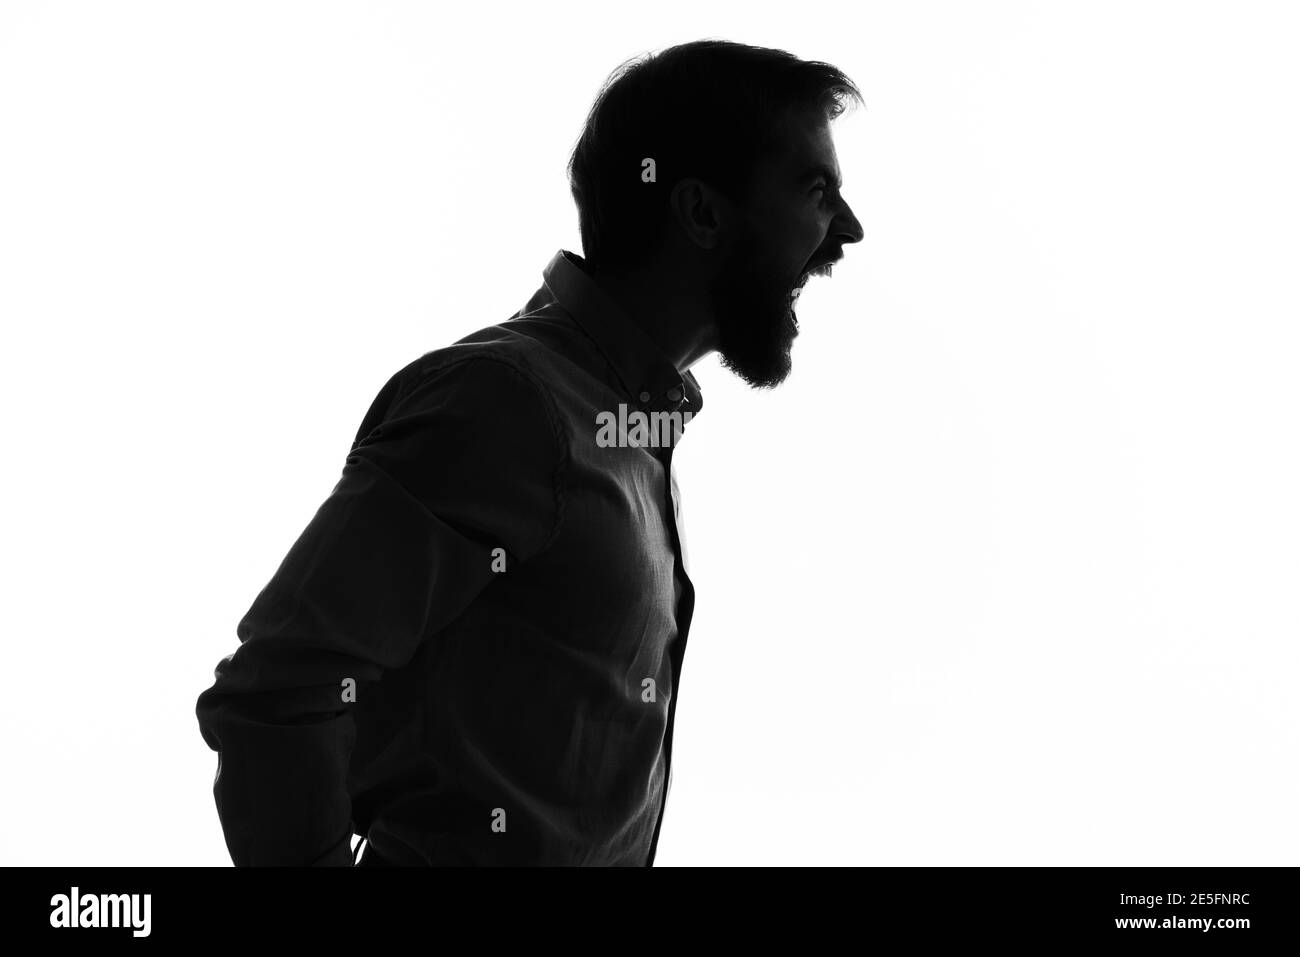 homme émotionnel silhouette ombre profil vue courte Photo Stock - Alamy